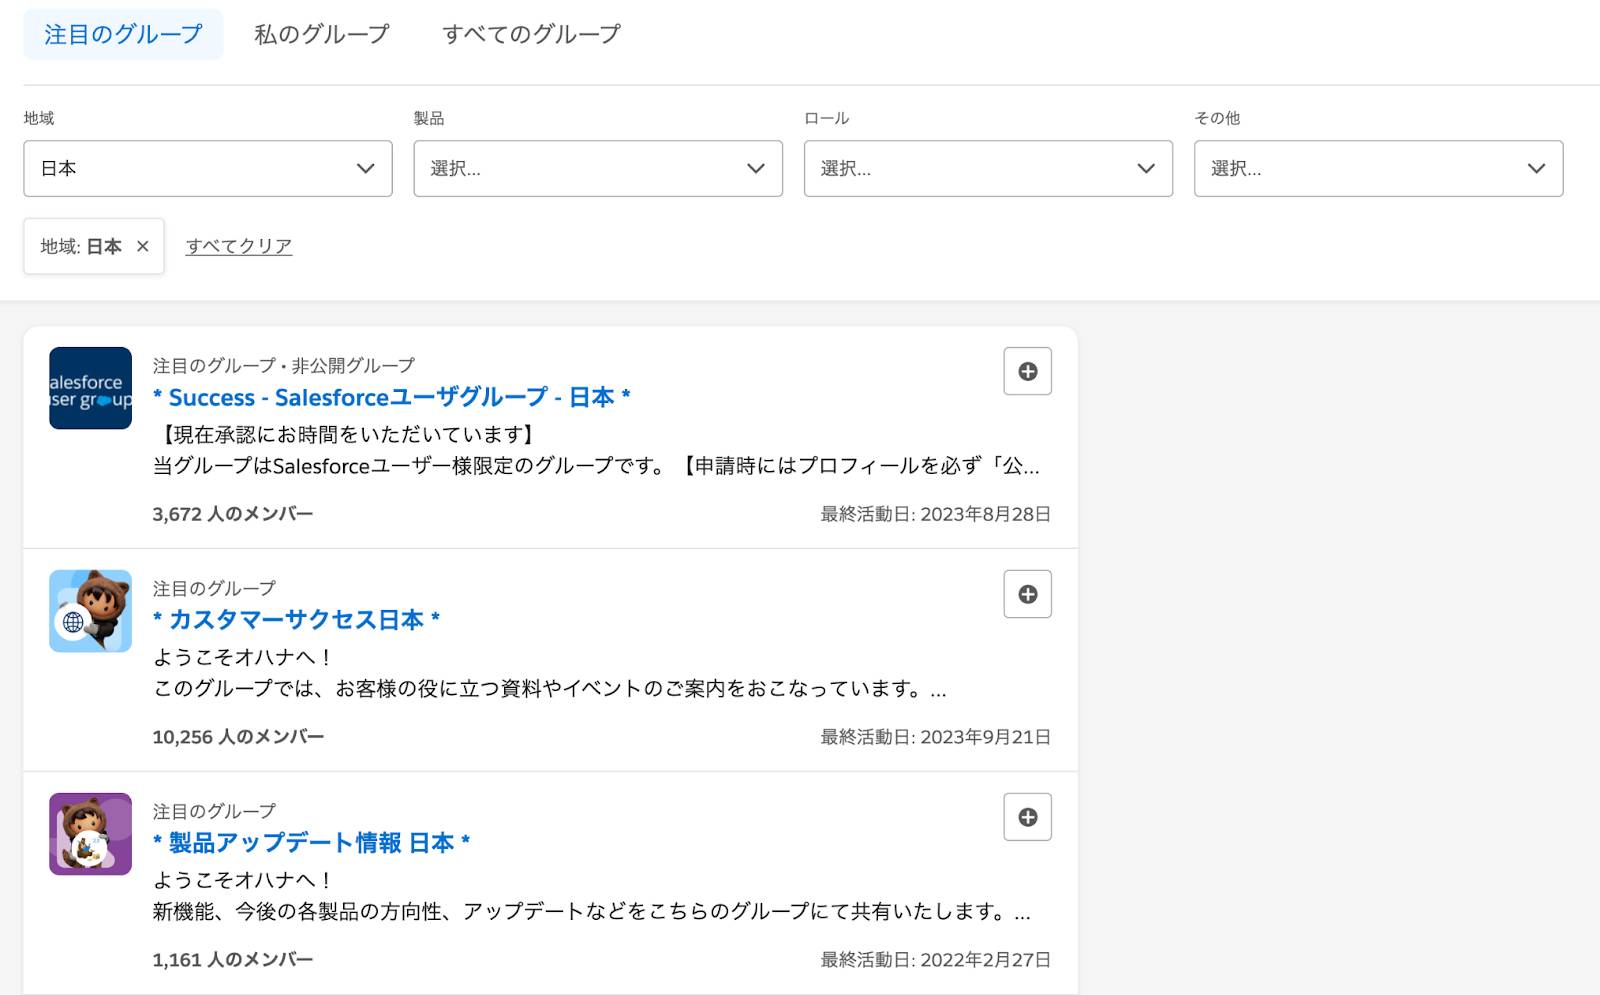 Encuentre grupos populares de Trailblazer Community en Japón en la página de grupos destacados de Trailblazer Community.